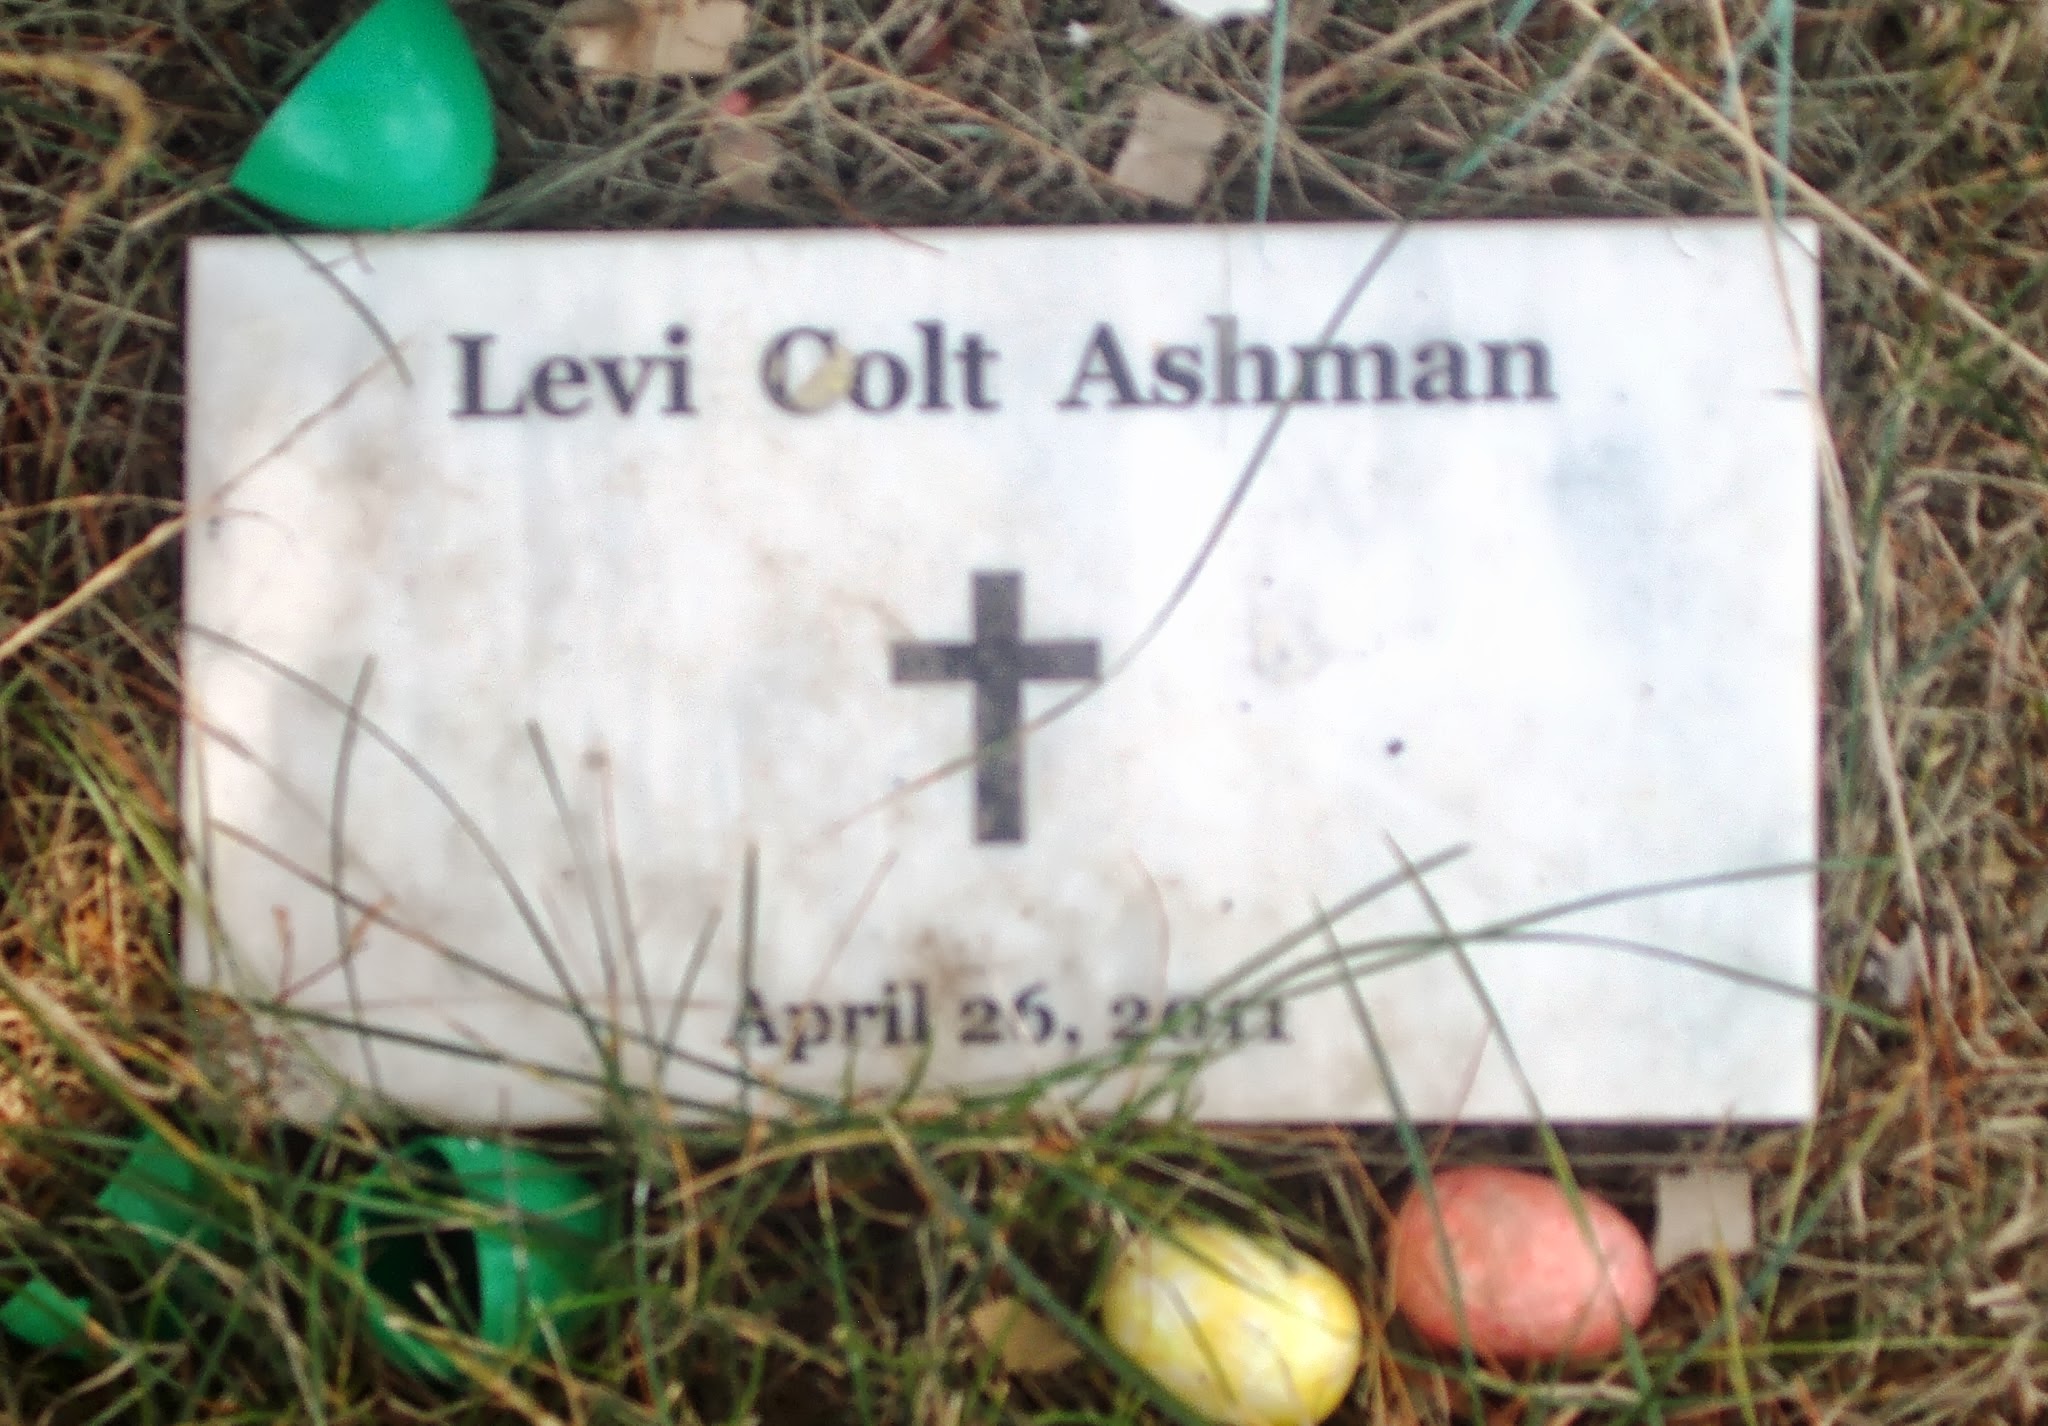 Levi Colt Ashman